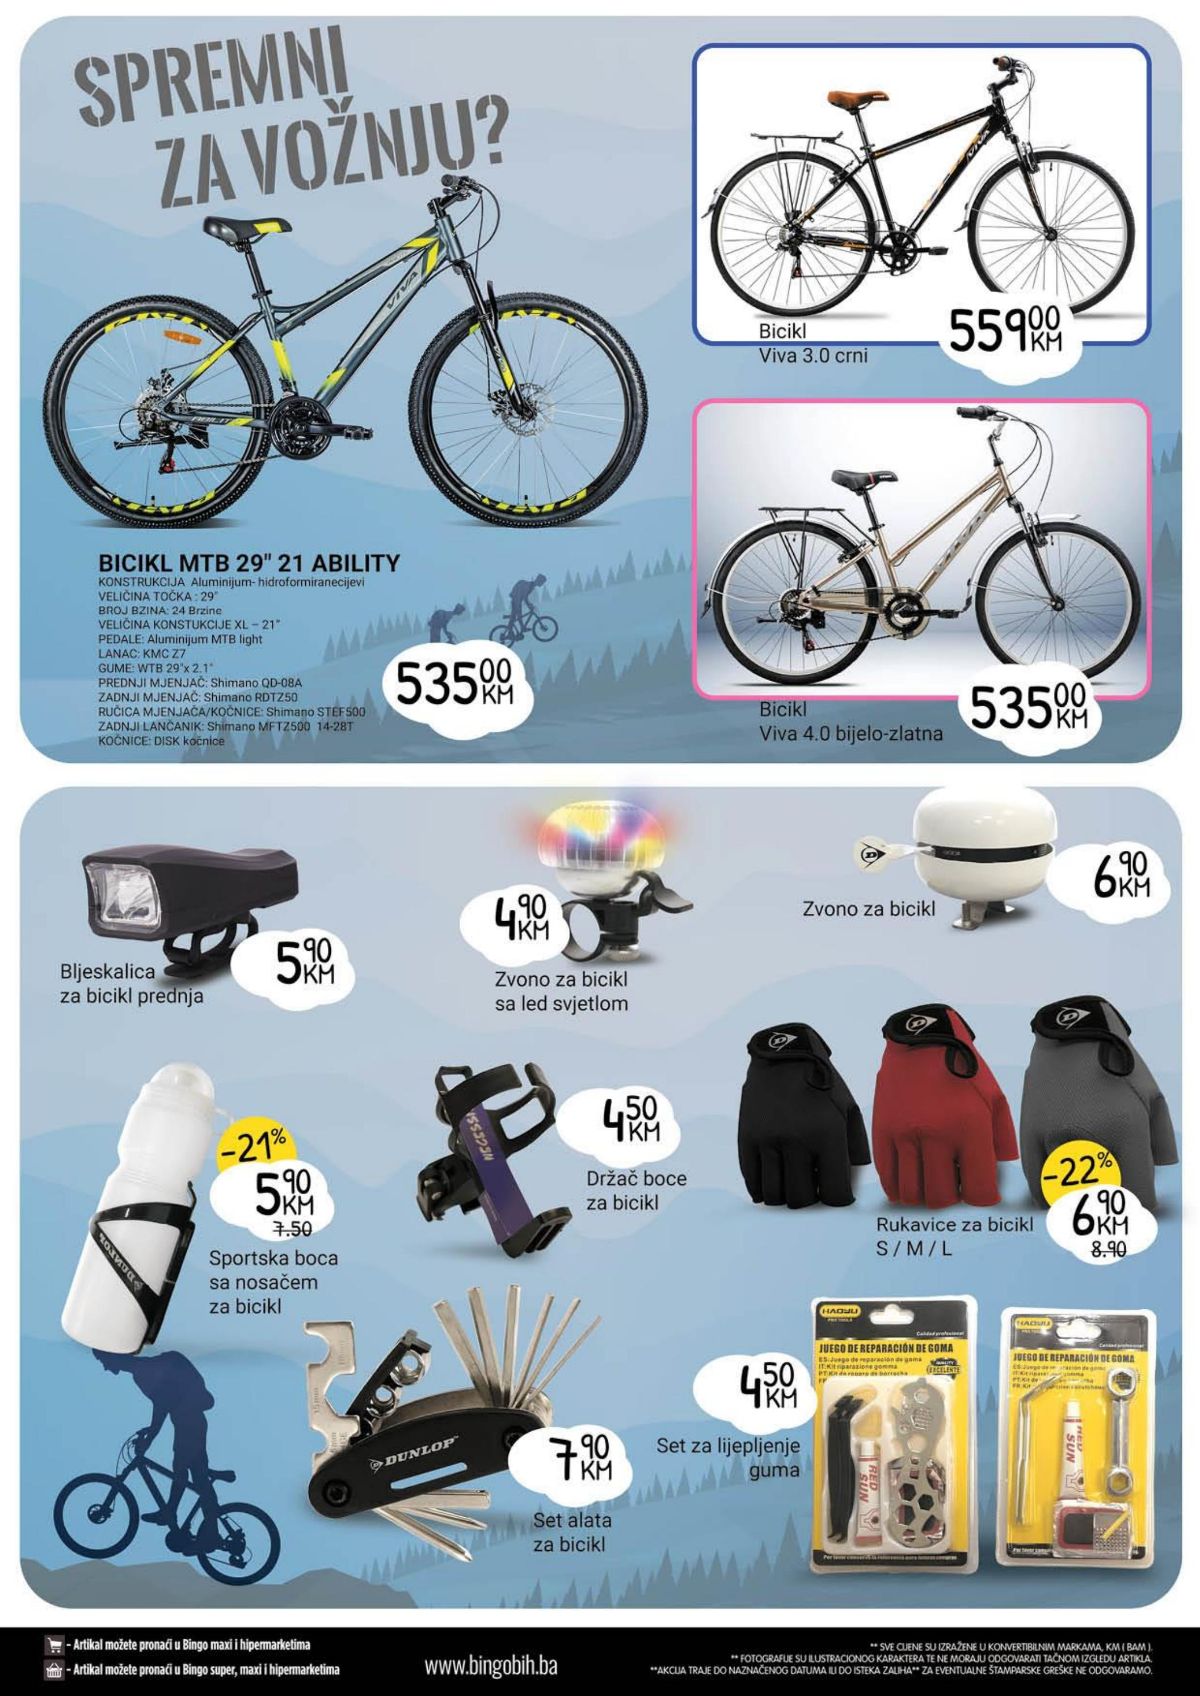 Bingo katalog sve za proljetnu zabavu i rekreaciju od 17.04. do 15.05. - stranica 24 bicikla i prema za bicikla za odrasle